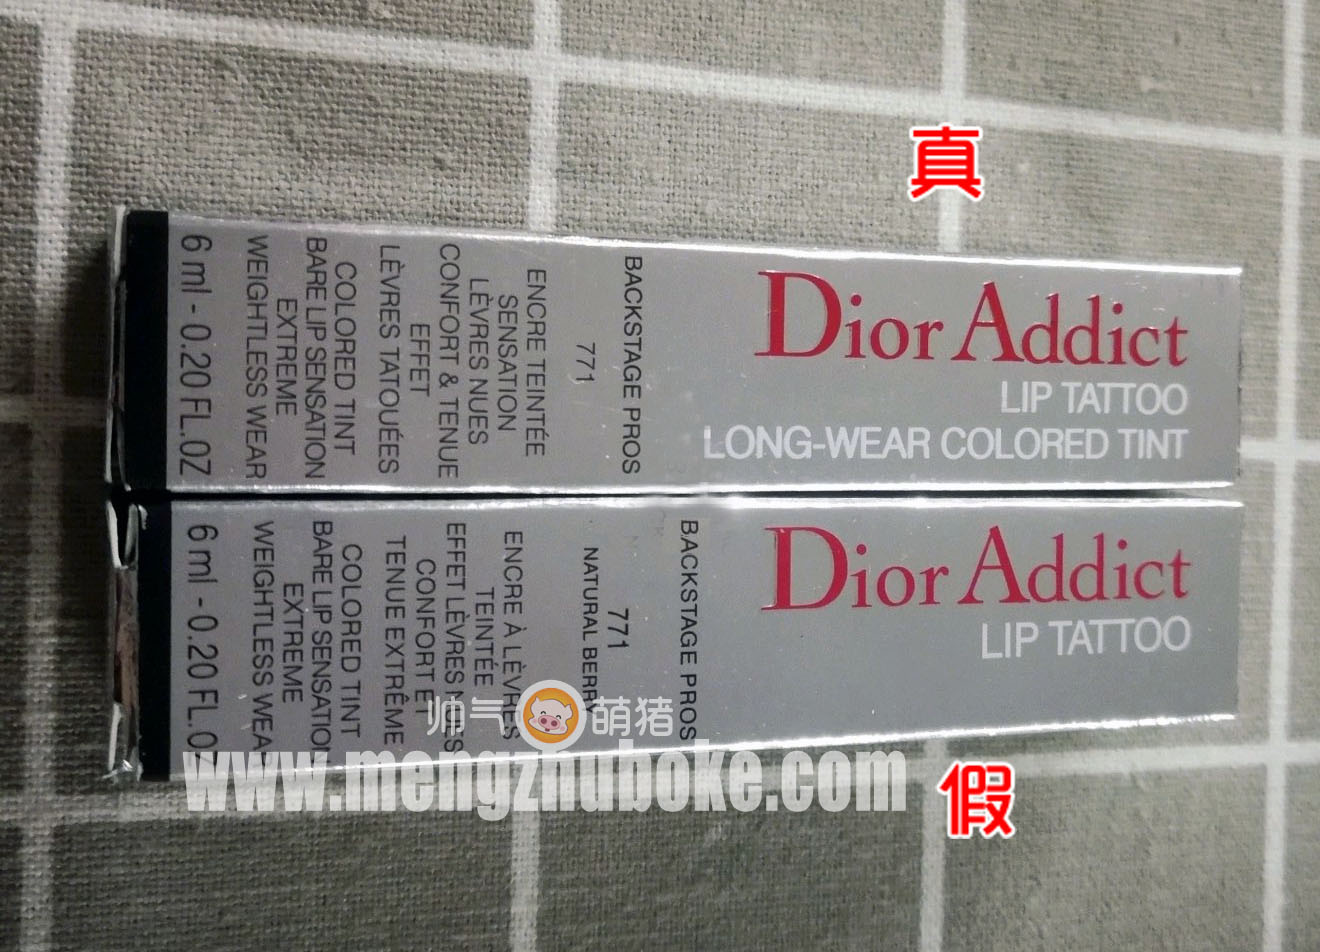 真假Dior染唇液外包装纸盒的对比